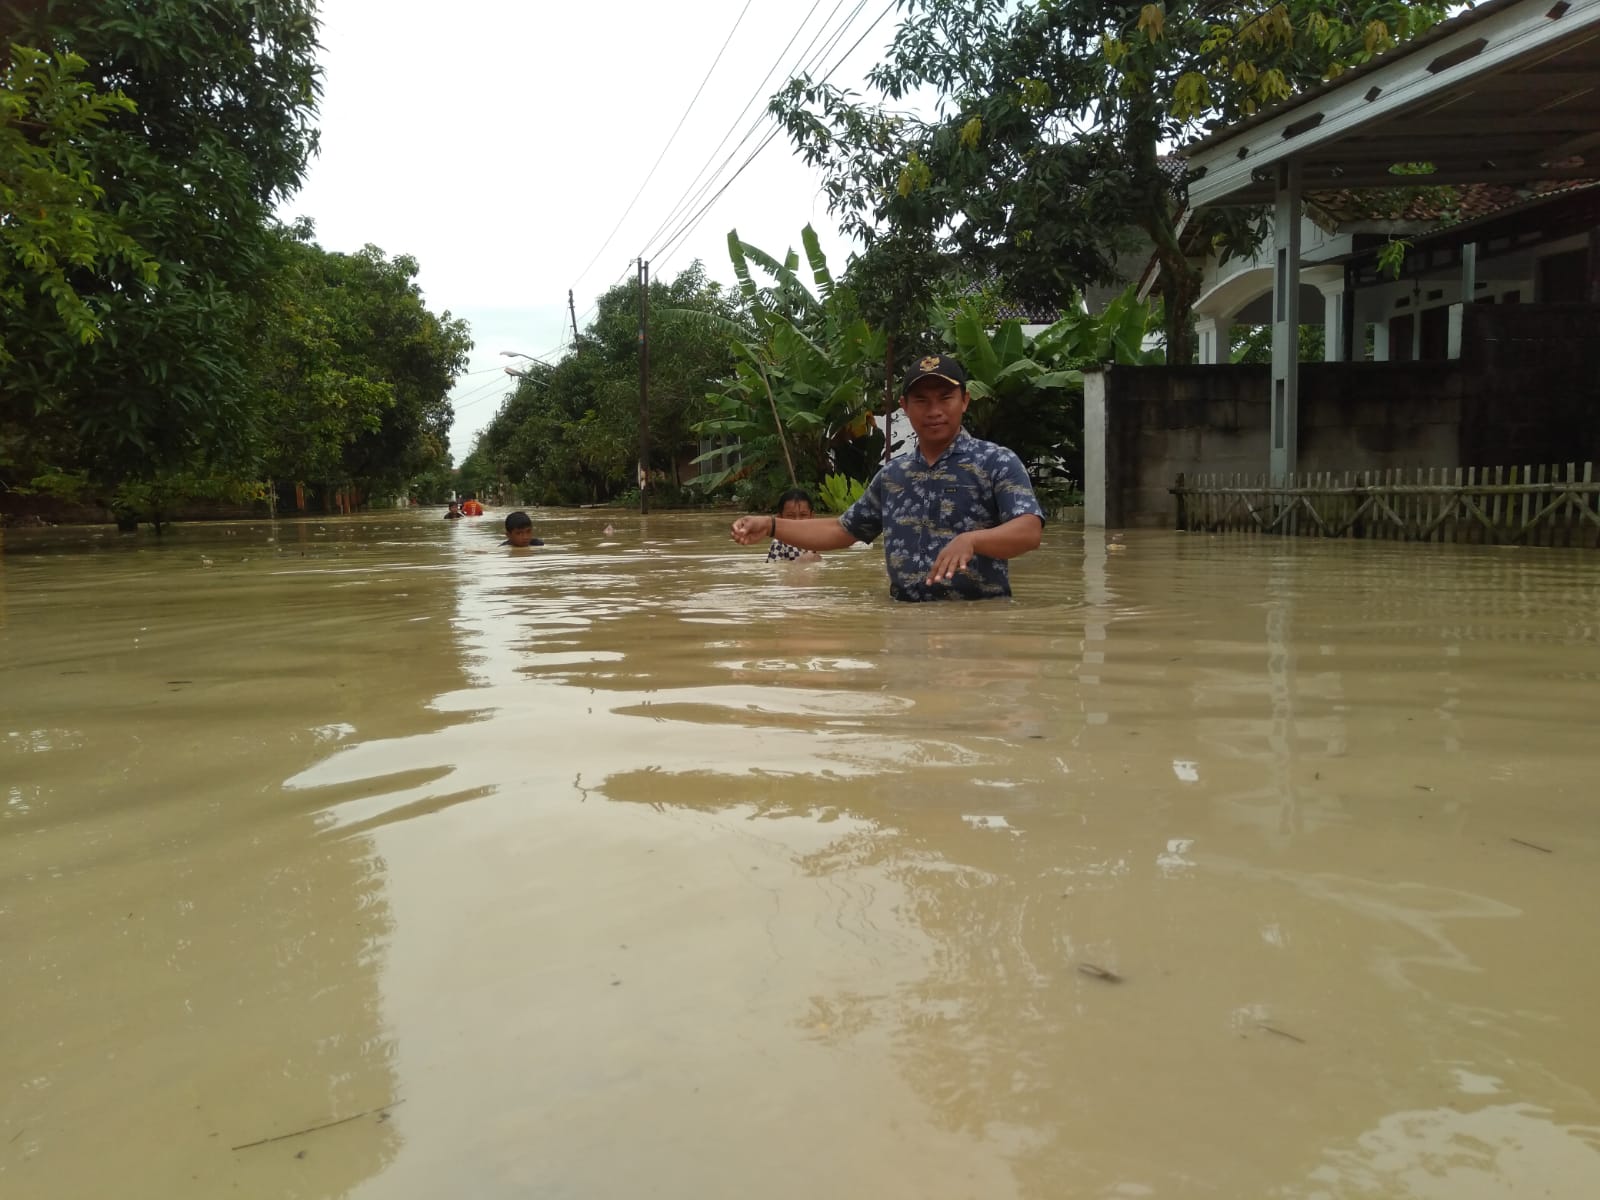 61 Rumah di Desa Sukareja Tegal Terendam Banjir, Banyak Hewan Ternak Hilang Terseret Arus